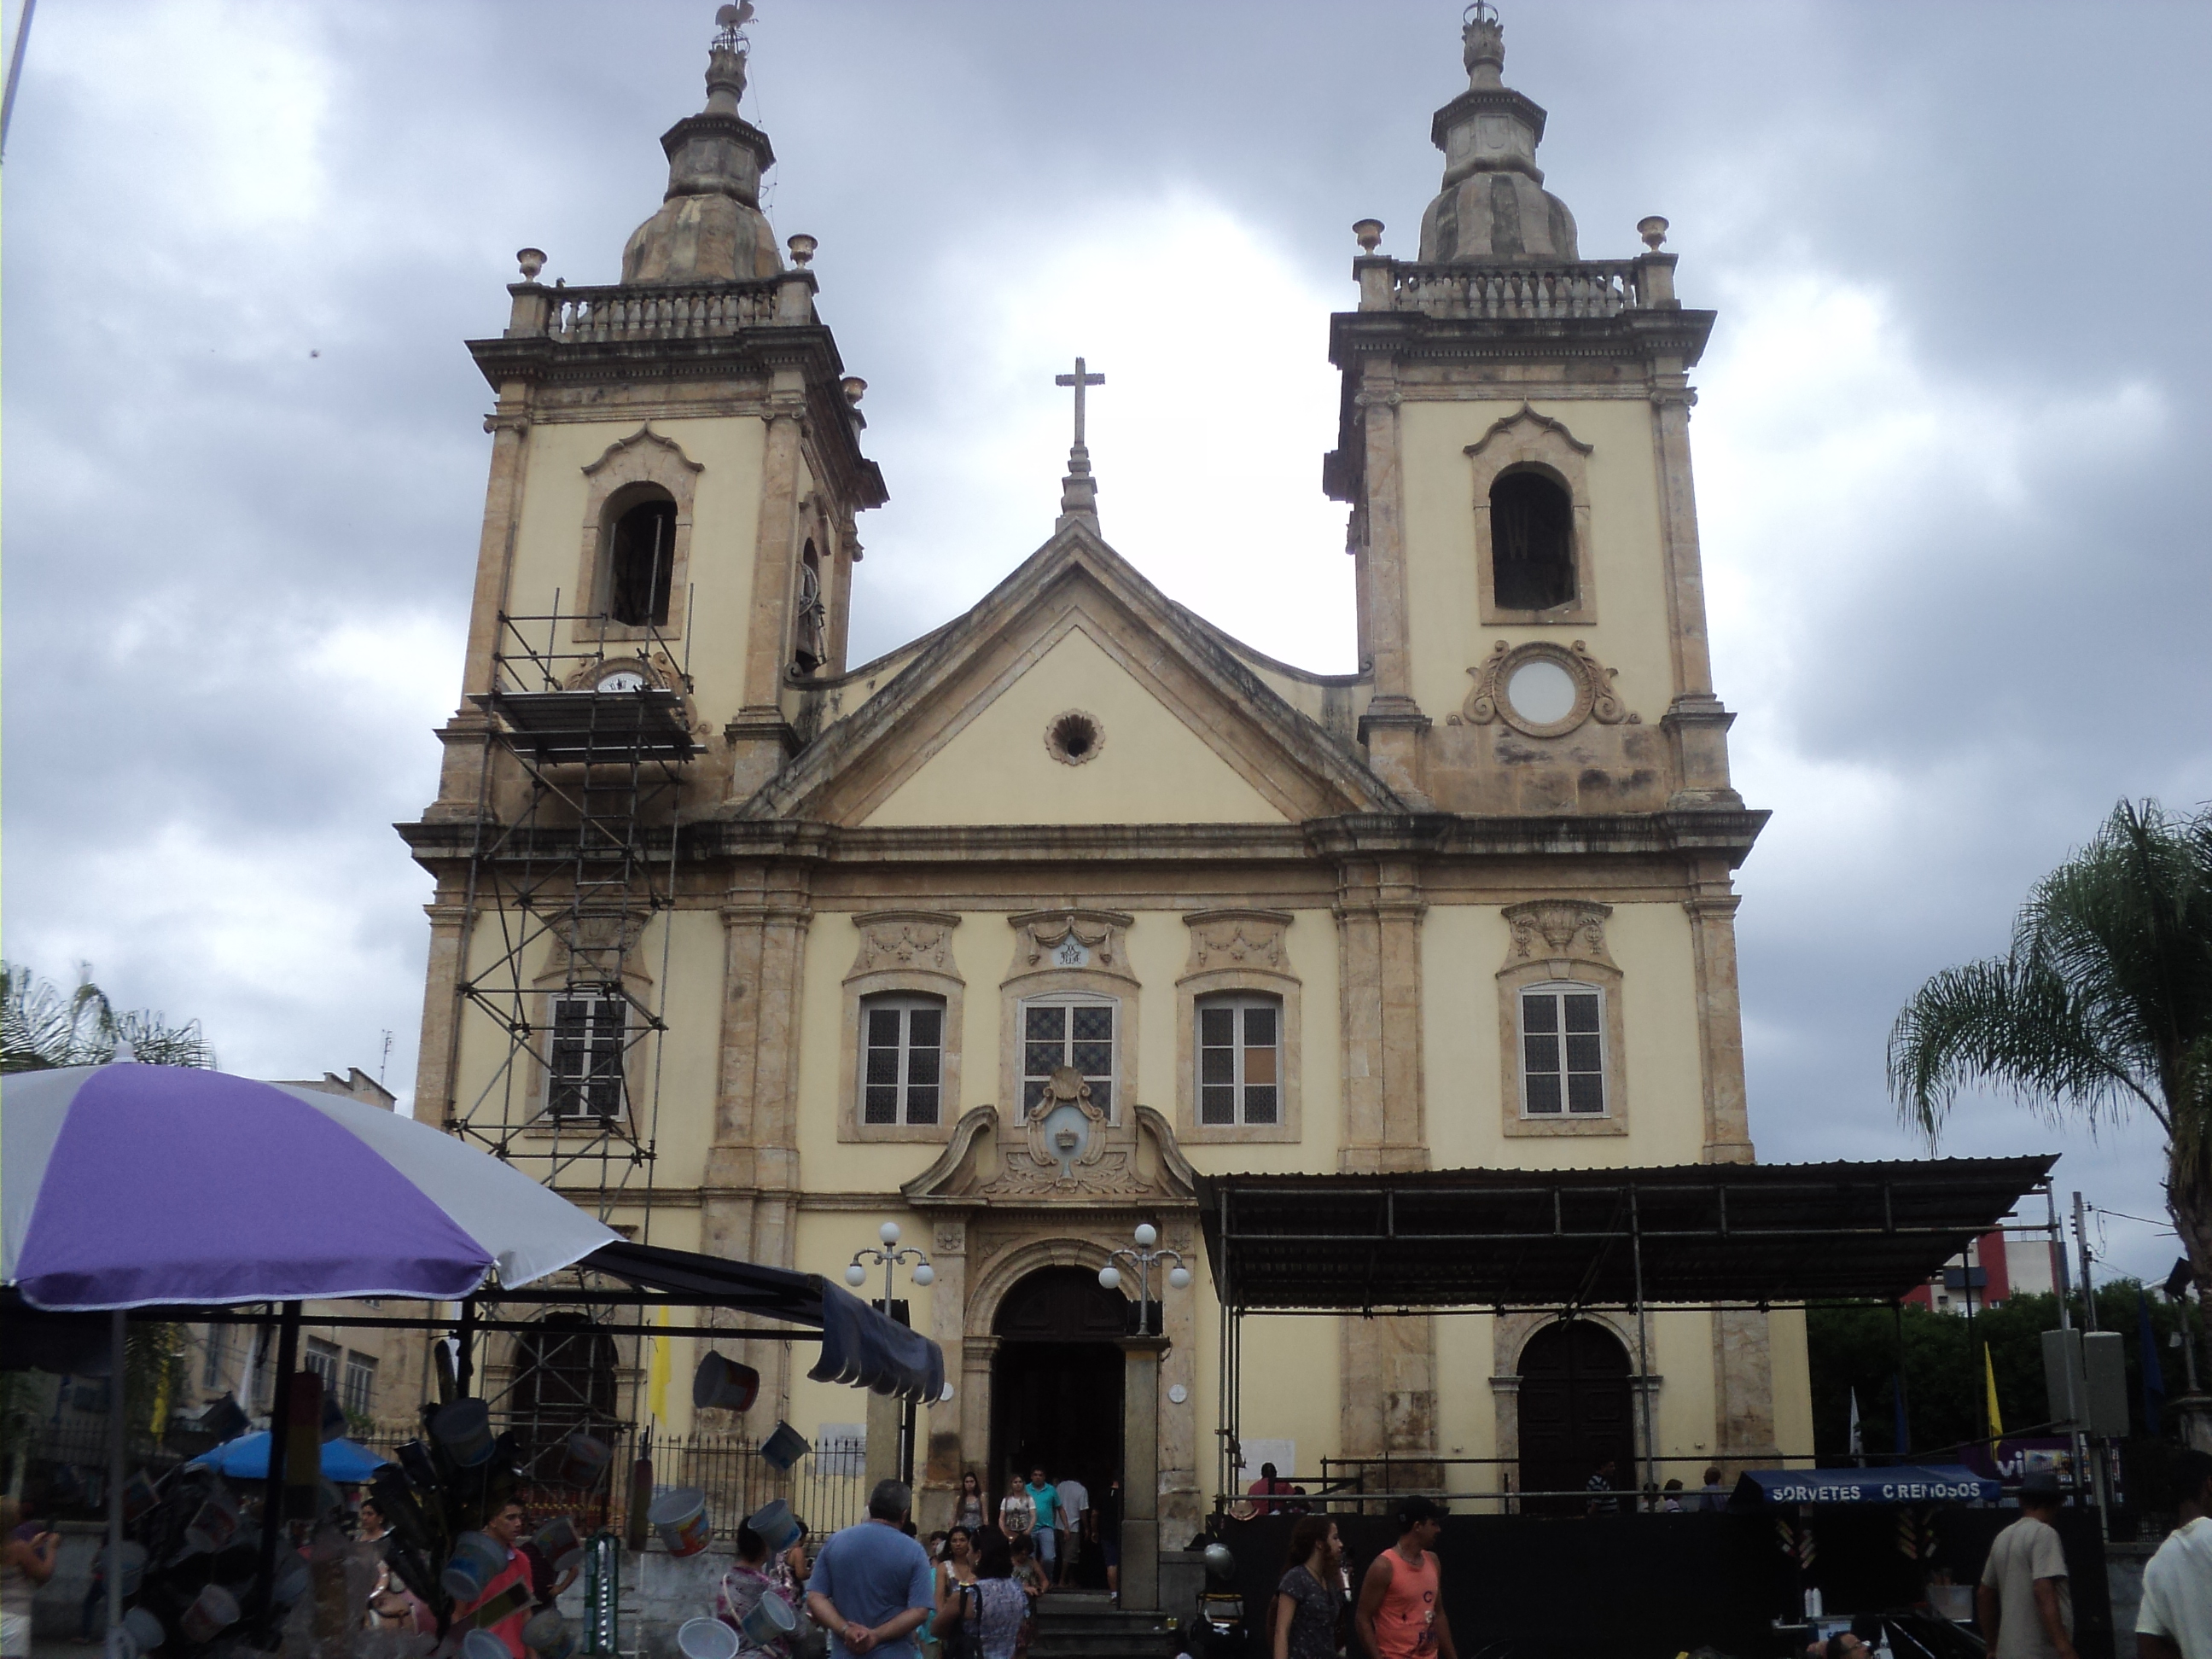 Antiga Igreja de Aparecida onde D. Pedro passou em 1822 durante viagem entre Rio de Janeiro e São Paulo que acabaria terminando com a declaração de Independência do Brasil